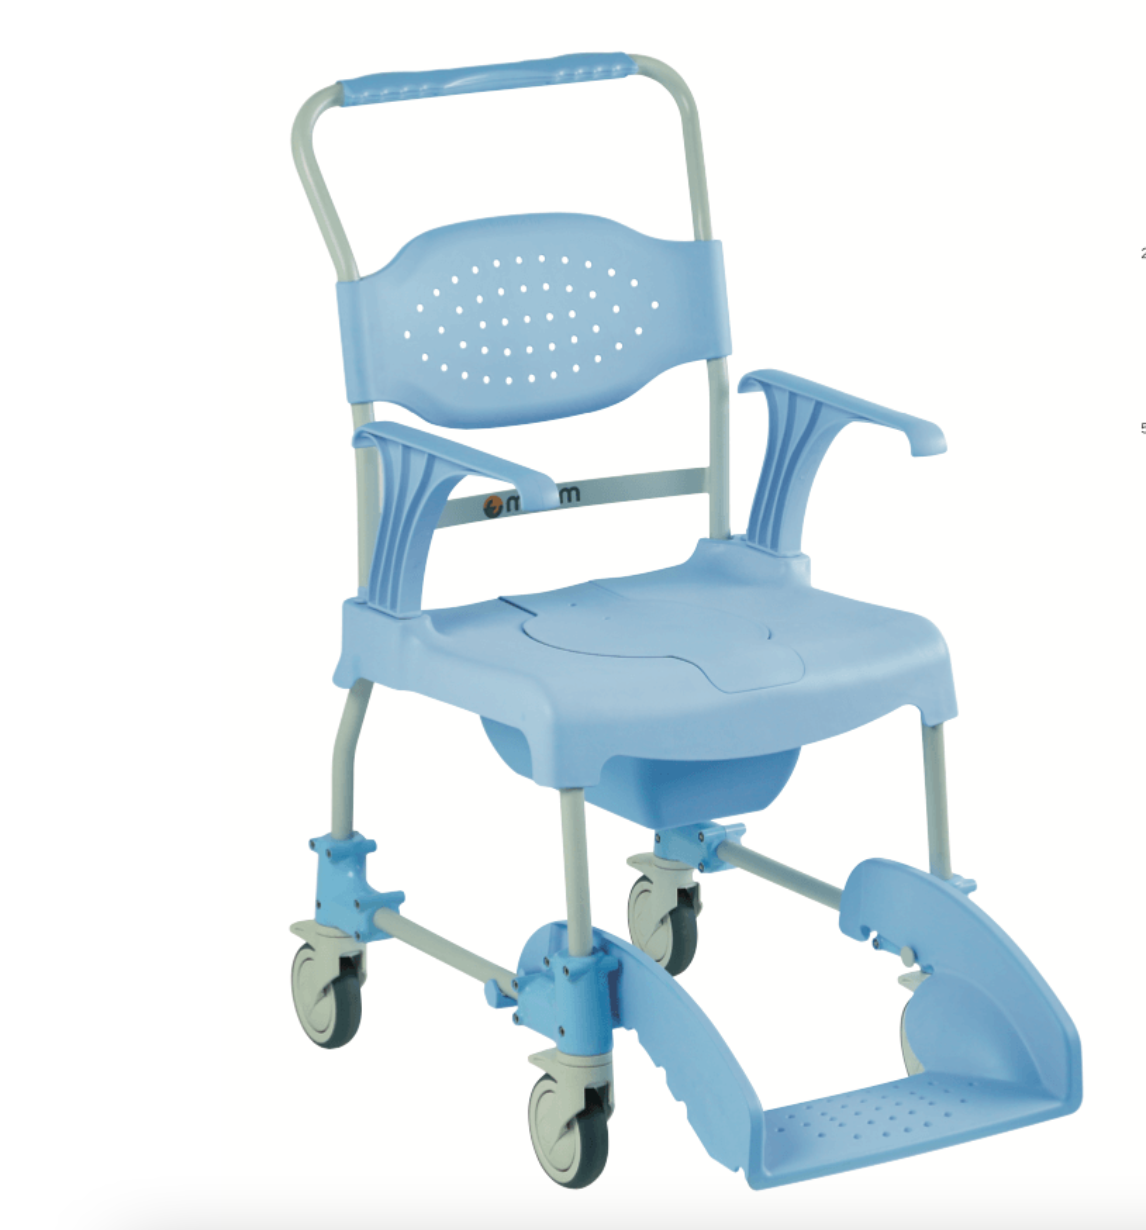 Стул для дцп. Санитарный стул для детей с ДЦП. Кресло стул с санитарным оснащением для детей с ДЦП. Туалет для детей с ДЦП. Ортника санитарный стул детский.